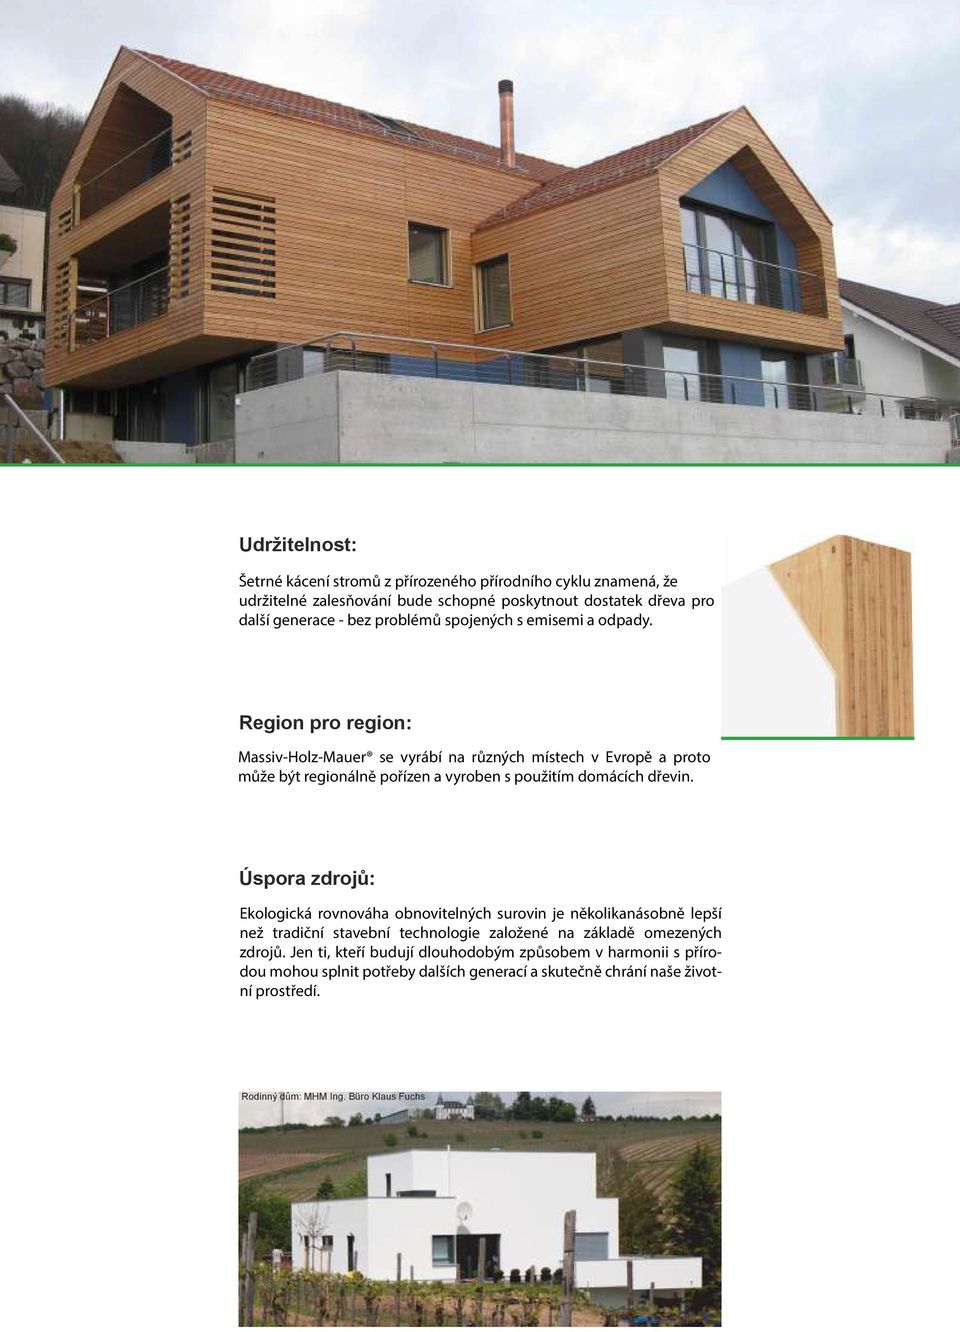 Region pro region: Massiv-Holz-Mauer se vyrábí na různých místech v Evropě a proto může být regionálně pořízen a vyroben s použitím domácích dřevin.